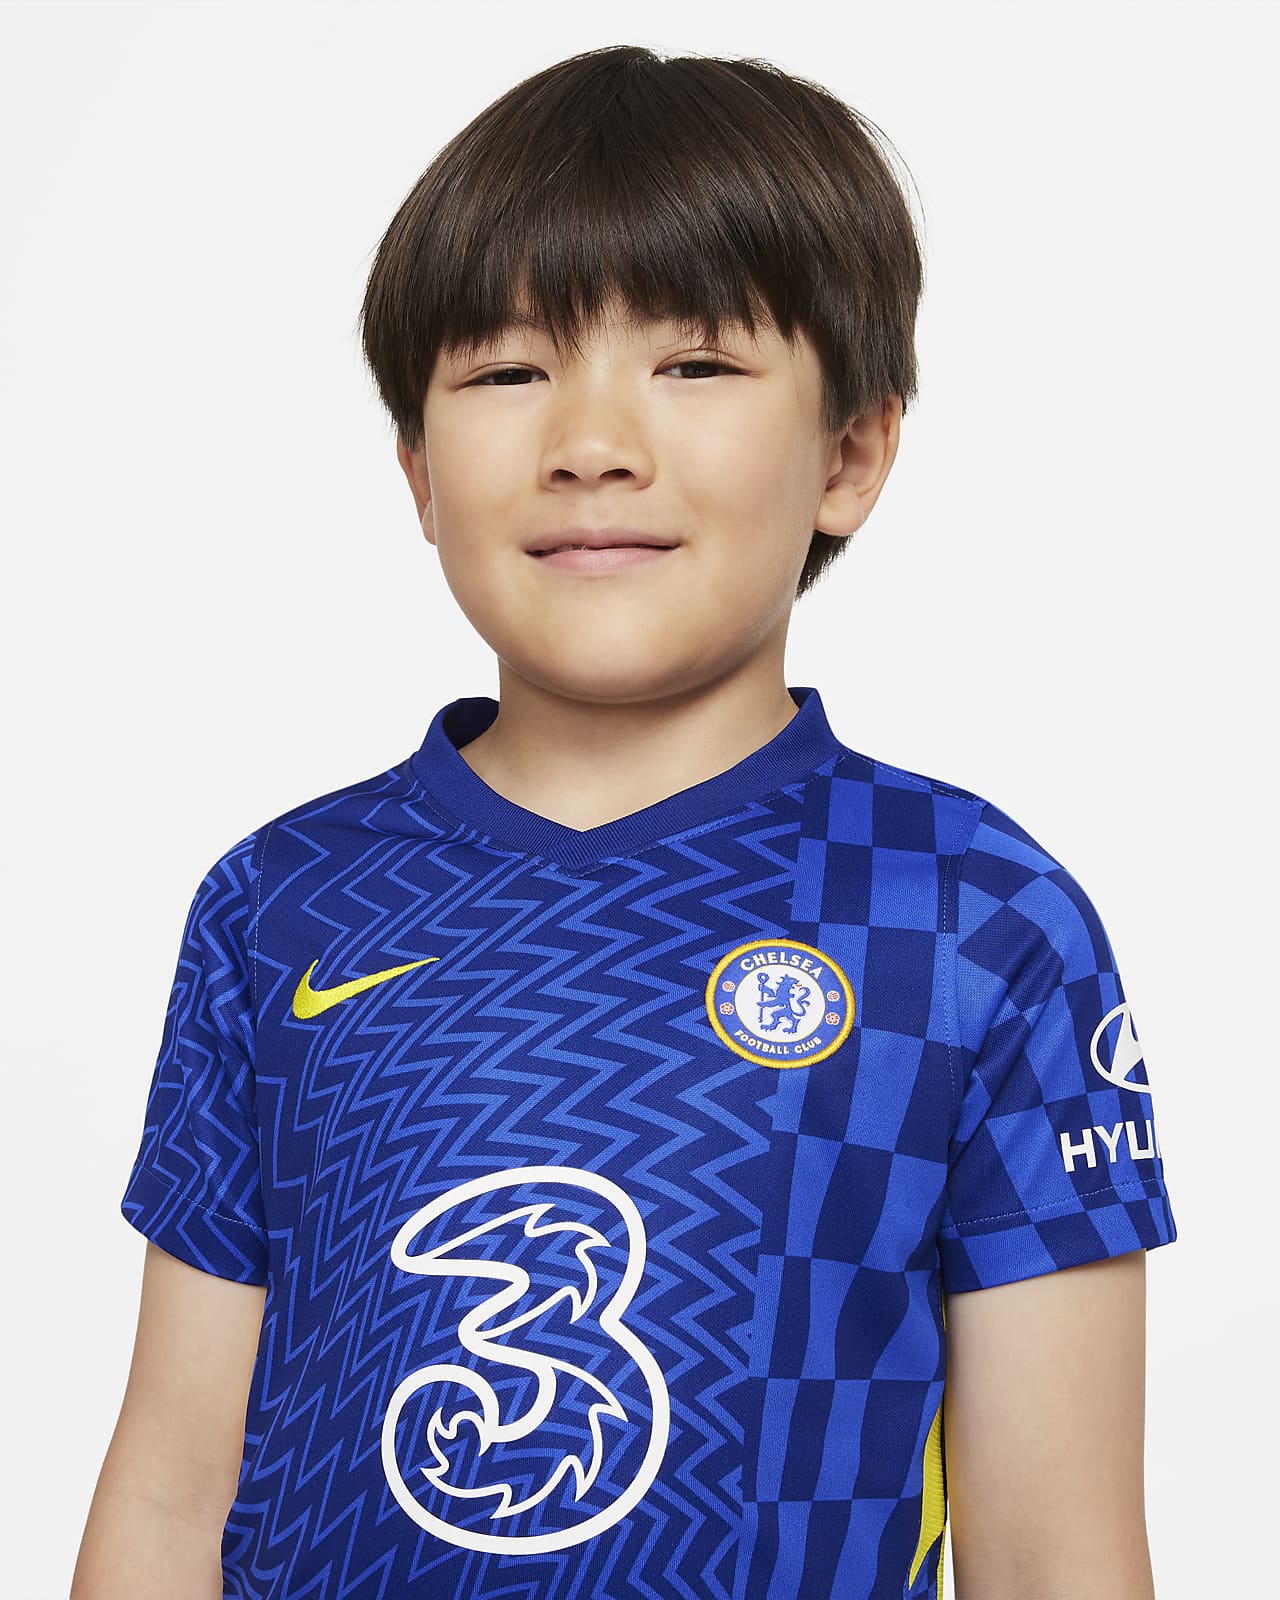 Chelsea FC 2021/22 Home Little Kids' Soccer Kit